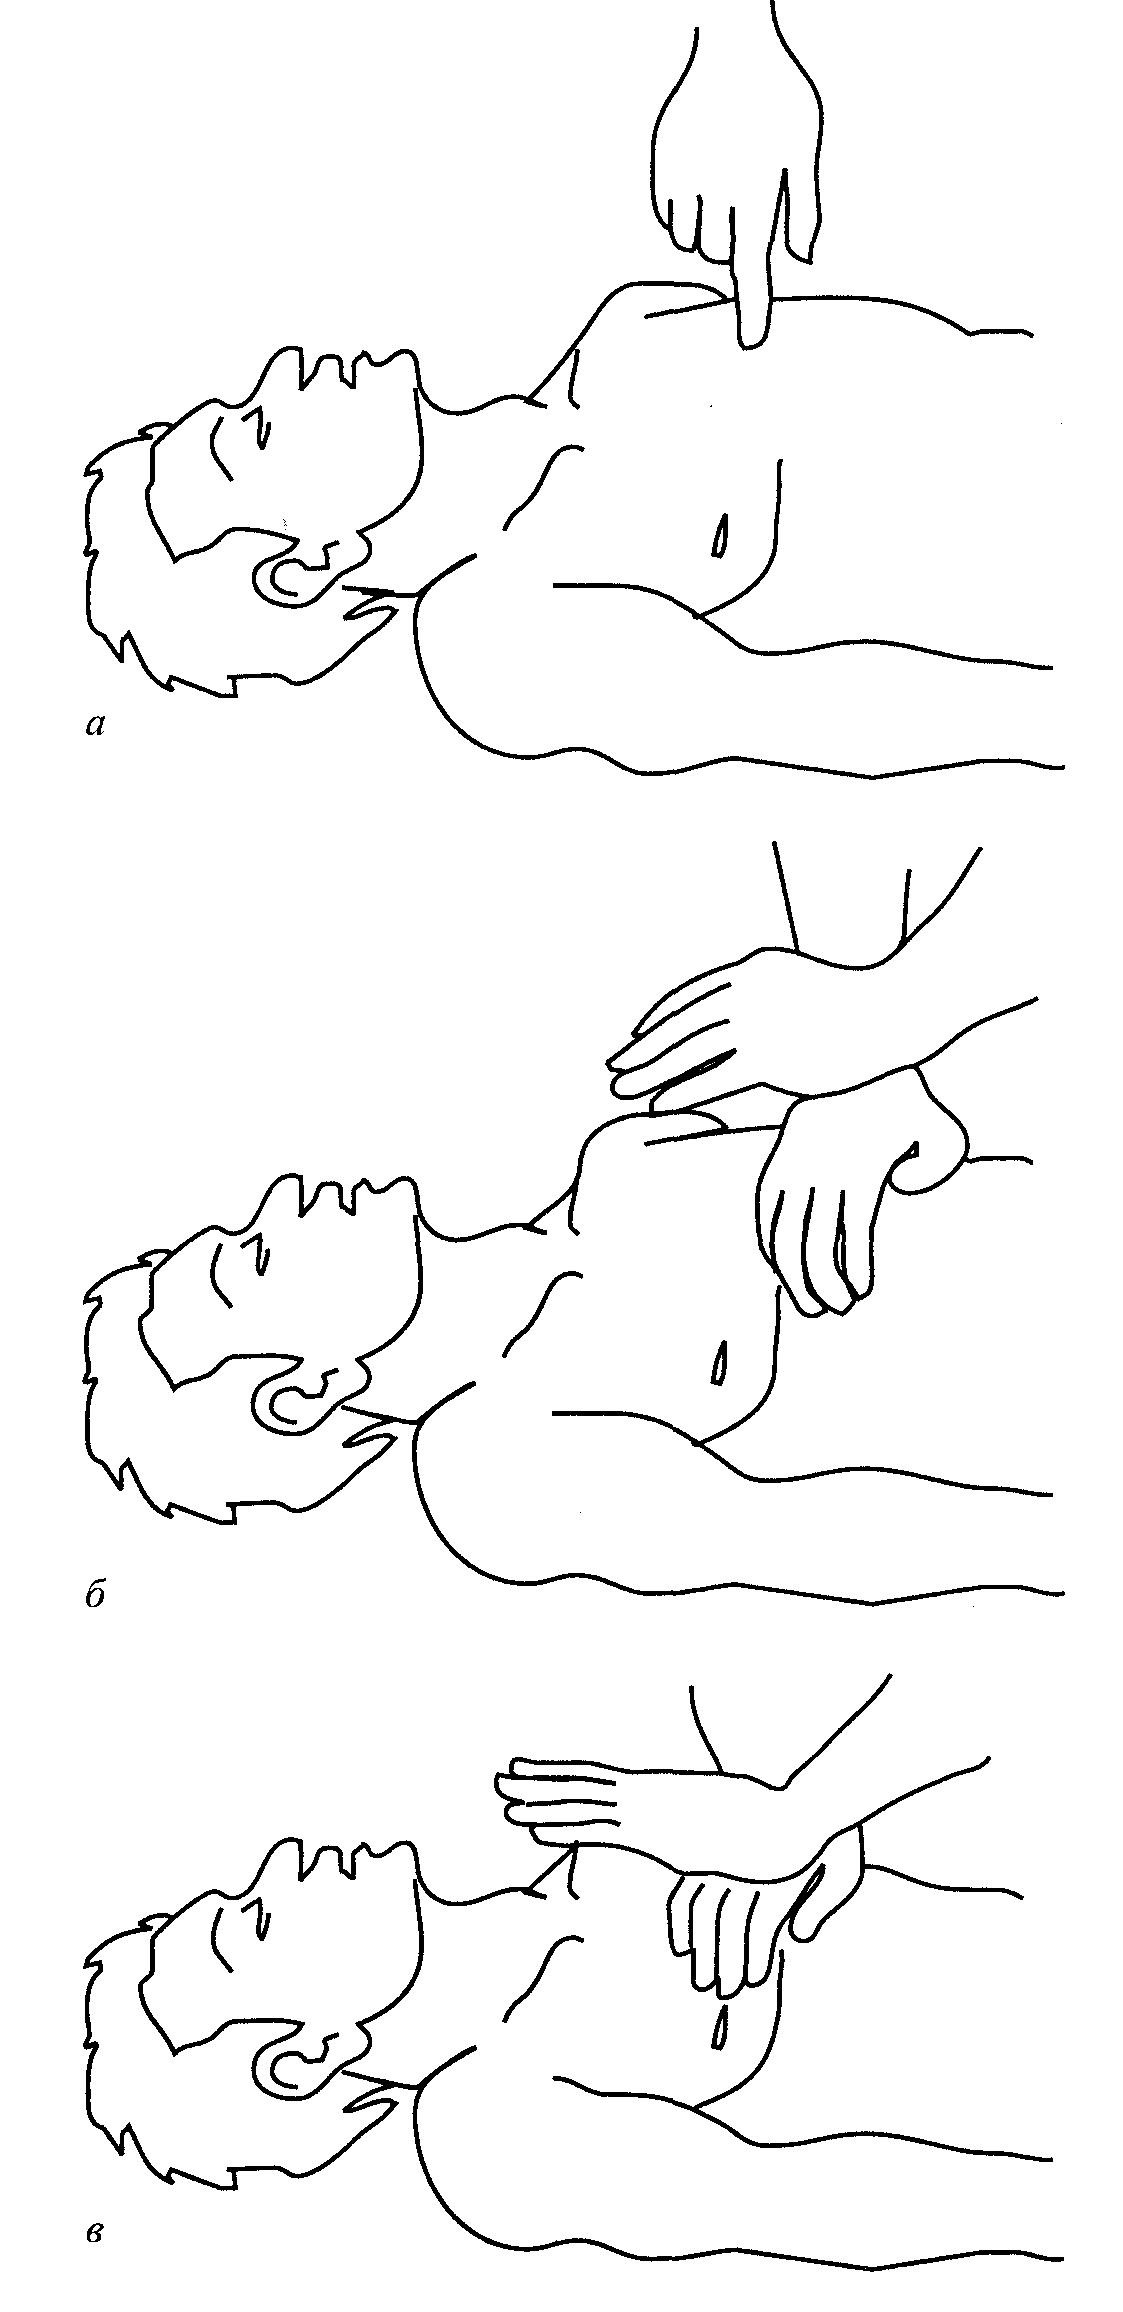 Положение рук при непрямом массаже сердца